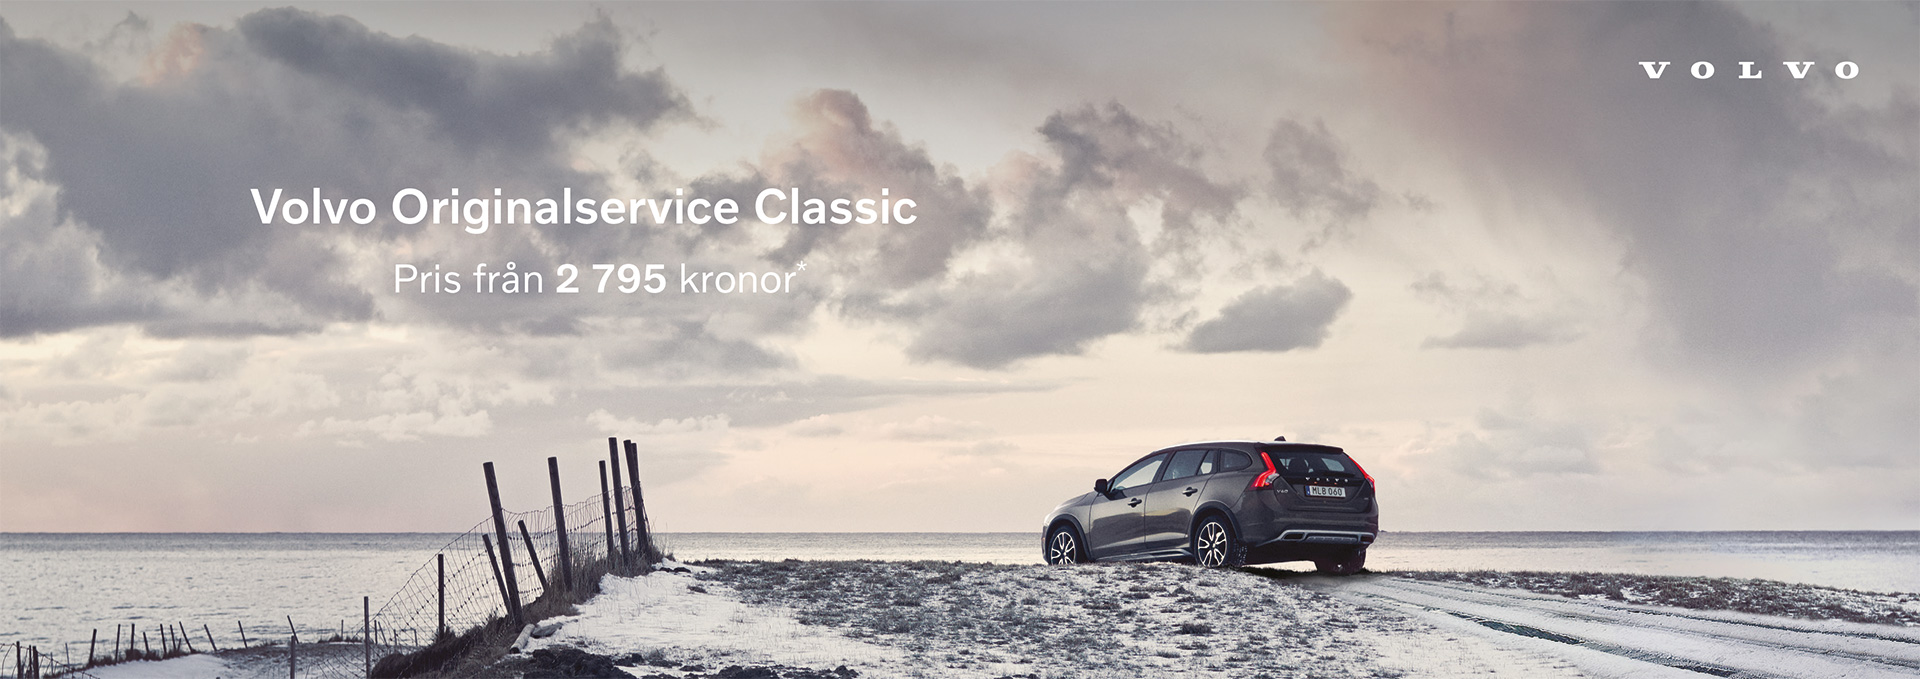 Volvo Originalservice Classic från 2795 kr för årsmodell 2017 eller äldre.